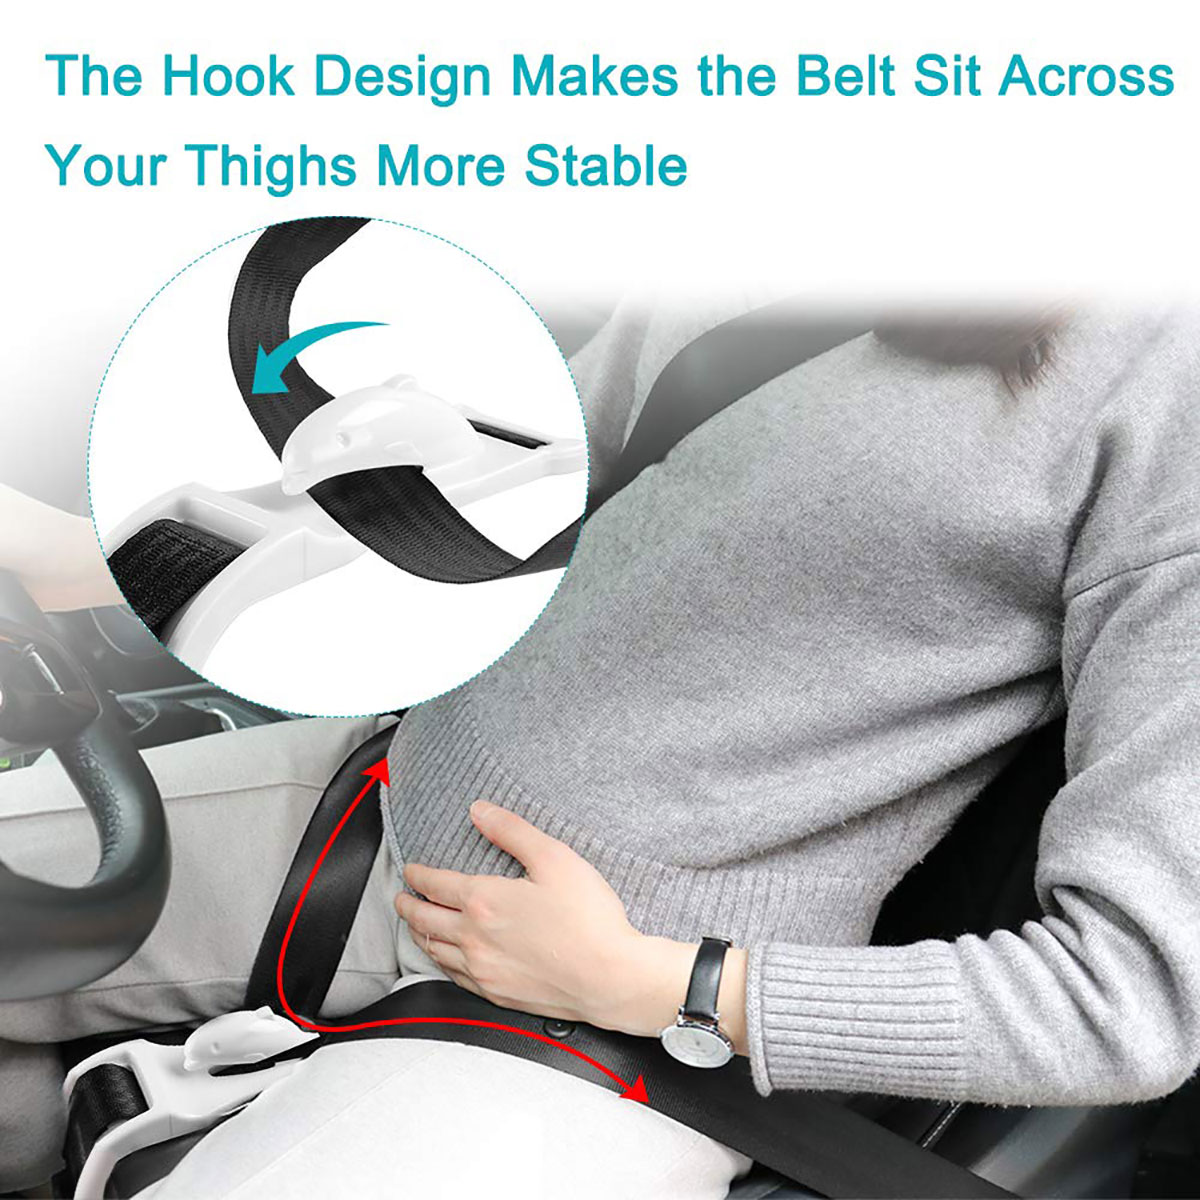 Pregnancy Maternity Seatbelt Safety Seat Belt Extender Adjuster BLACK